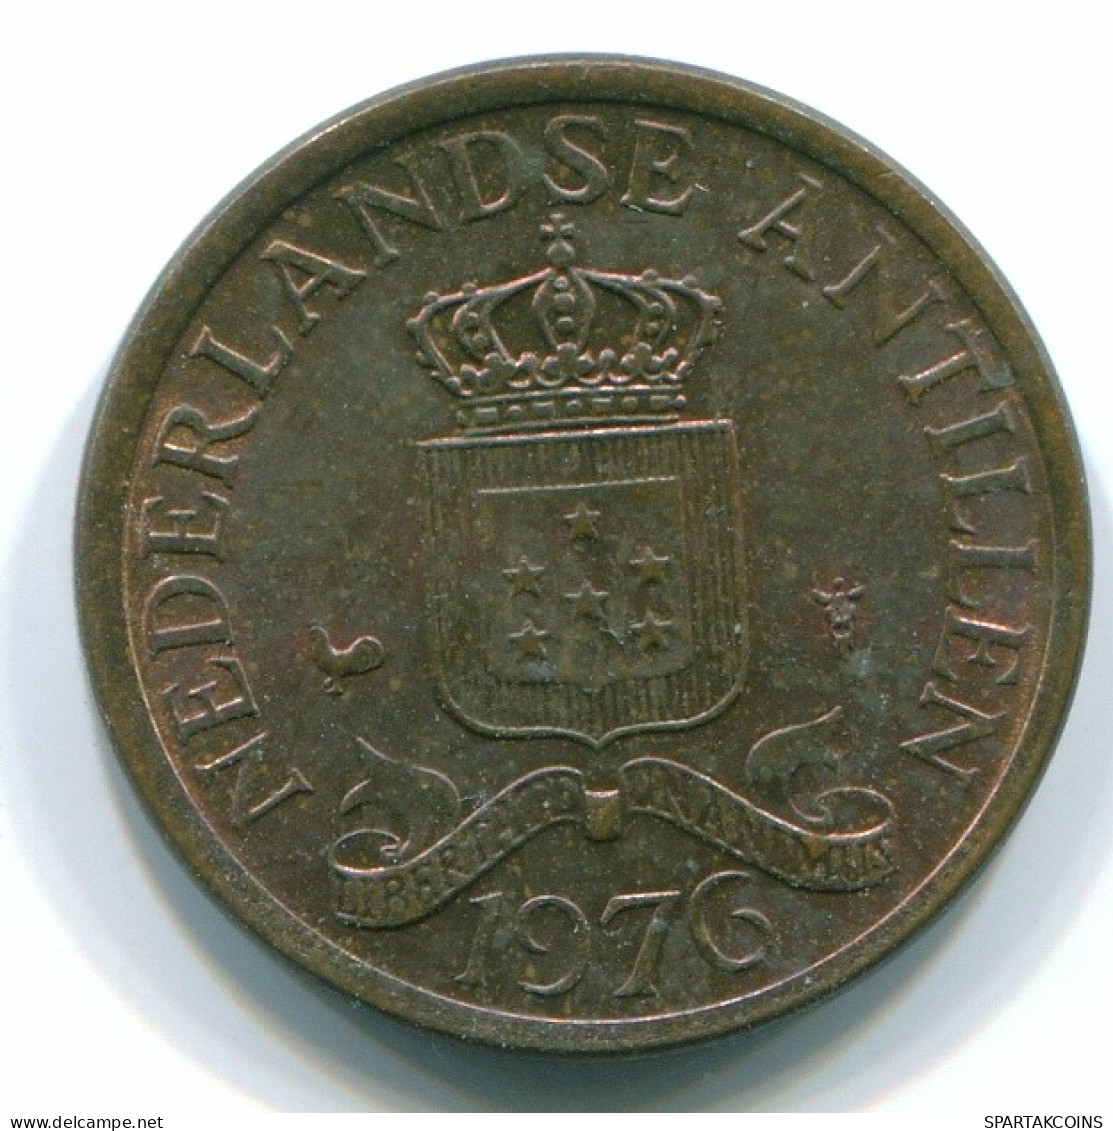 1 CENT 1976 NIEDERLÄNDISCHE ANTILLEN Bronze Koloniale Münze #S10690.D.A - Antillas Neerlandesas